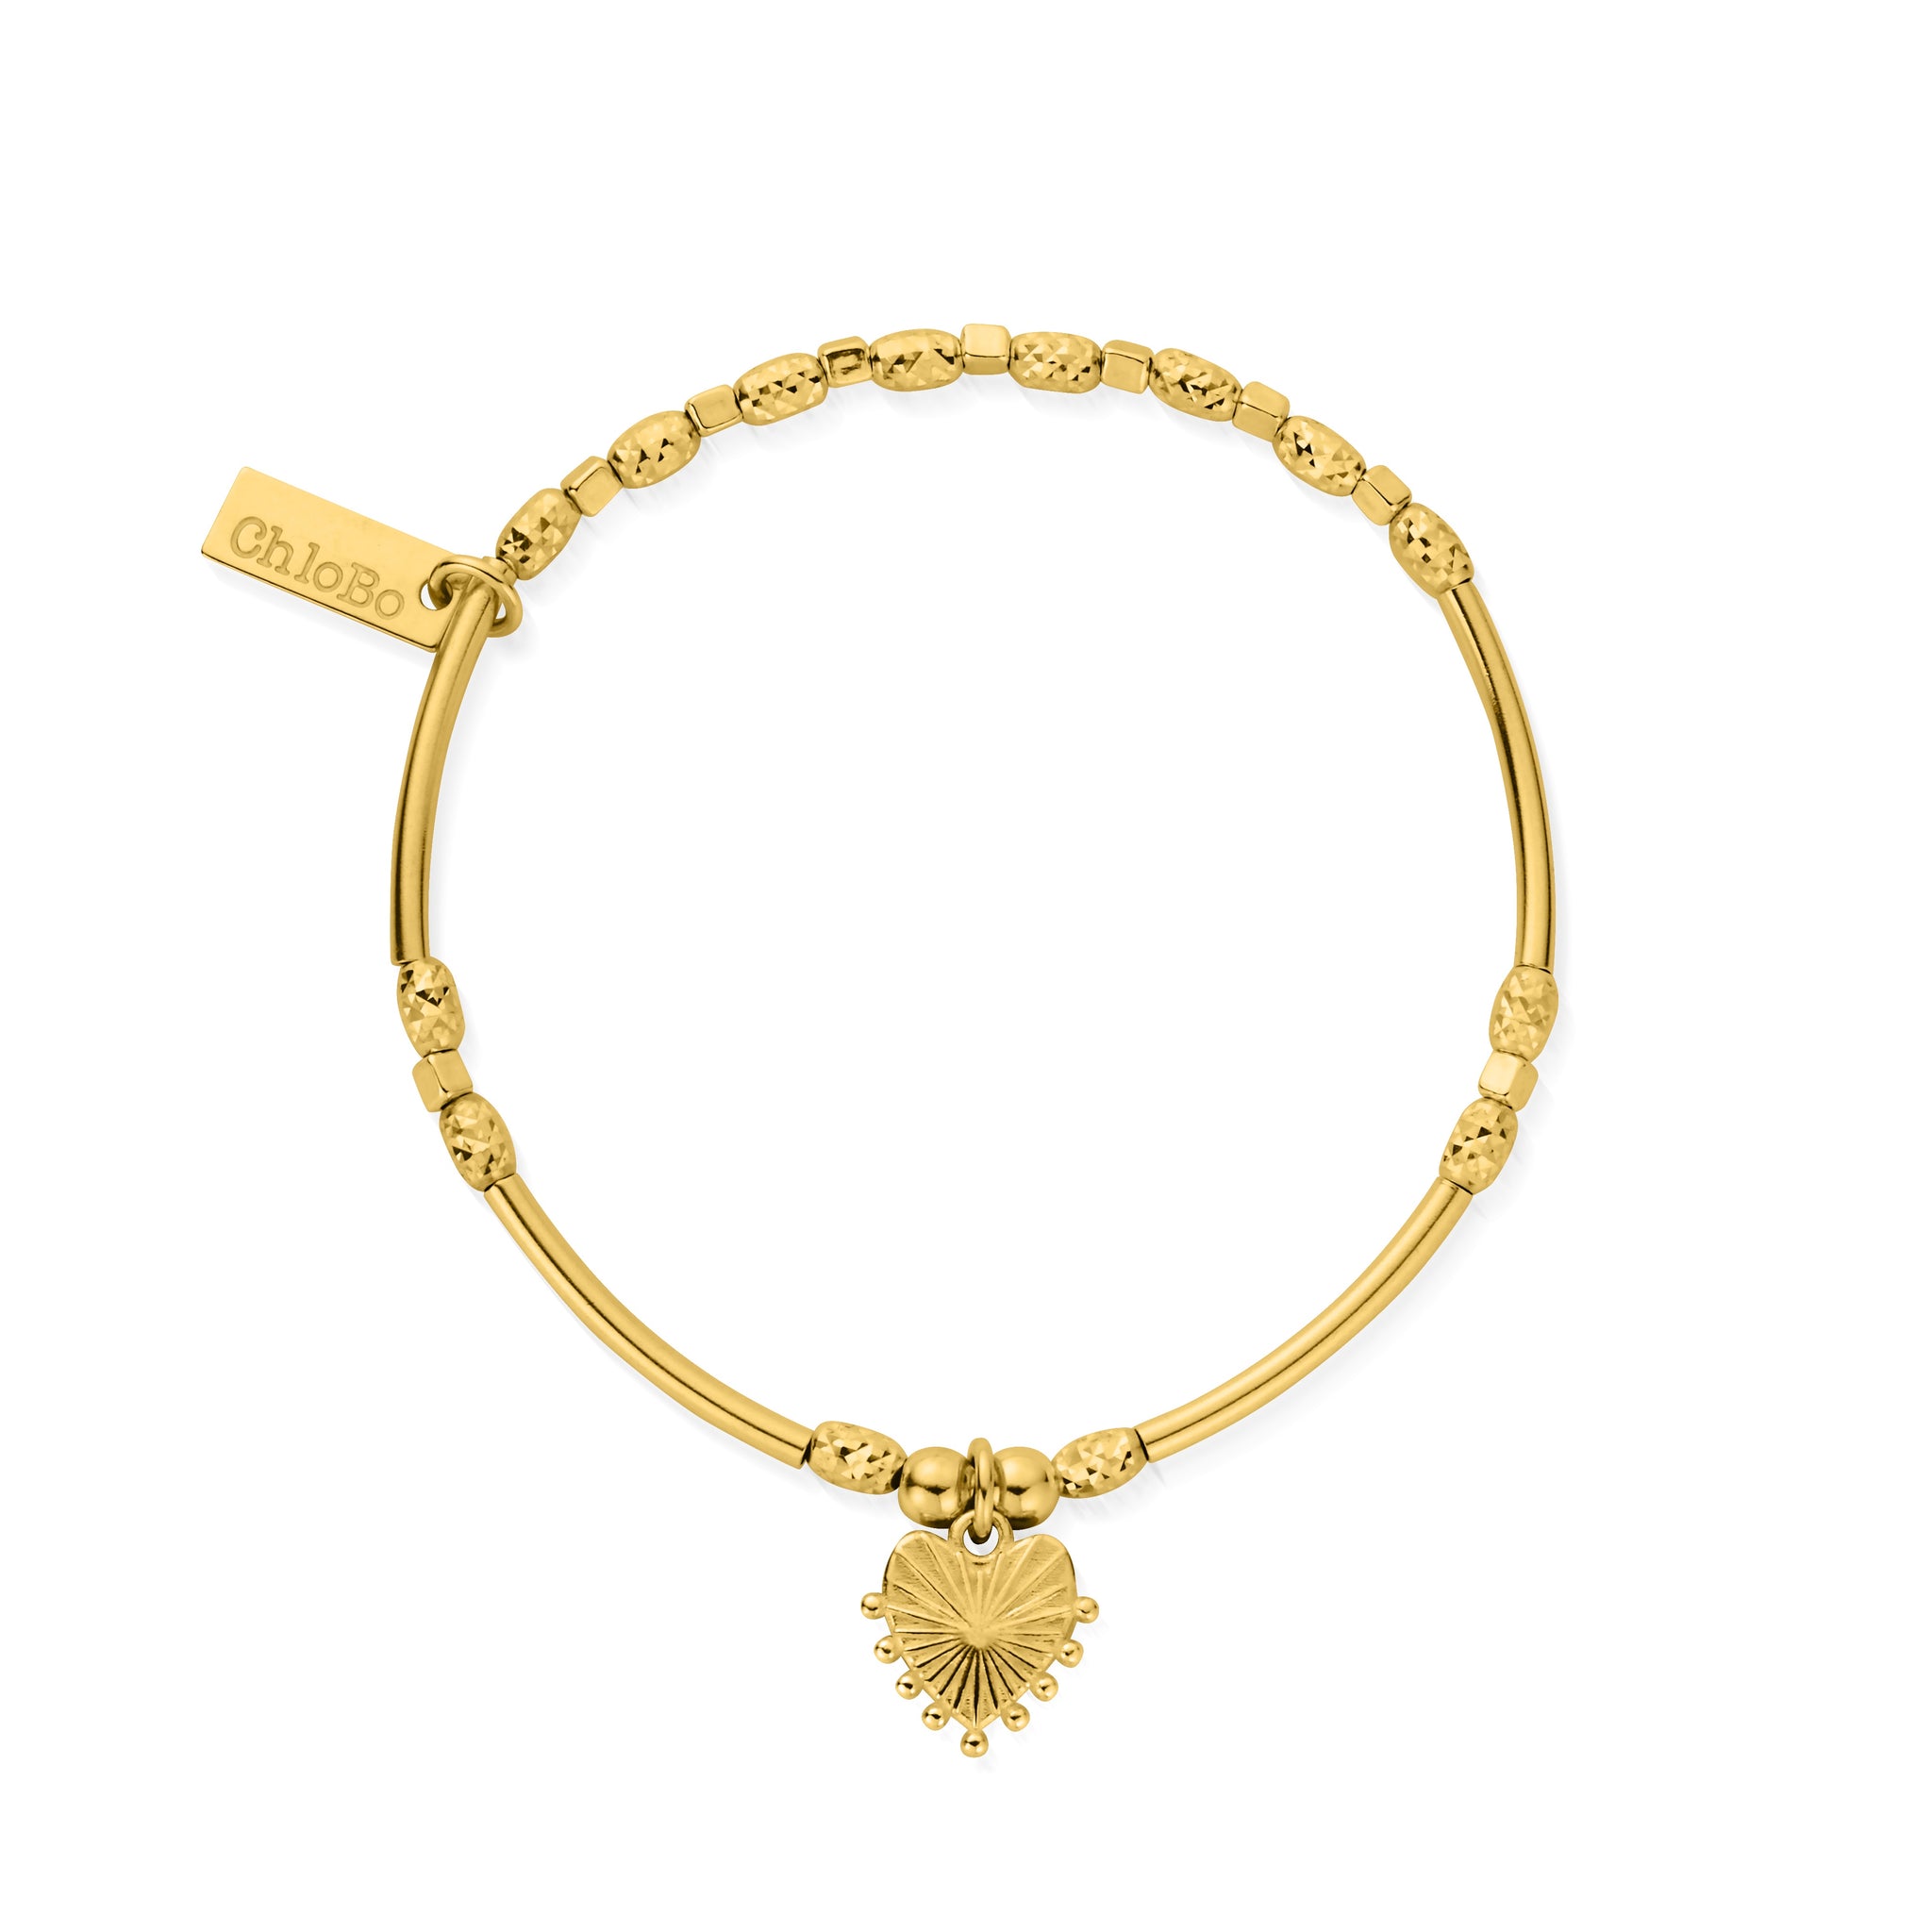 ChloBo Gold Glowing Beauty Bracelet